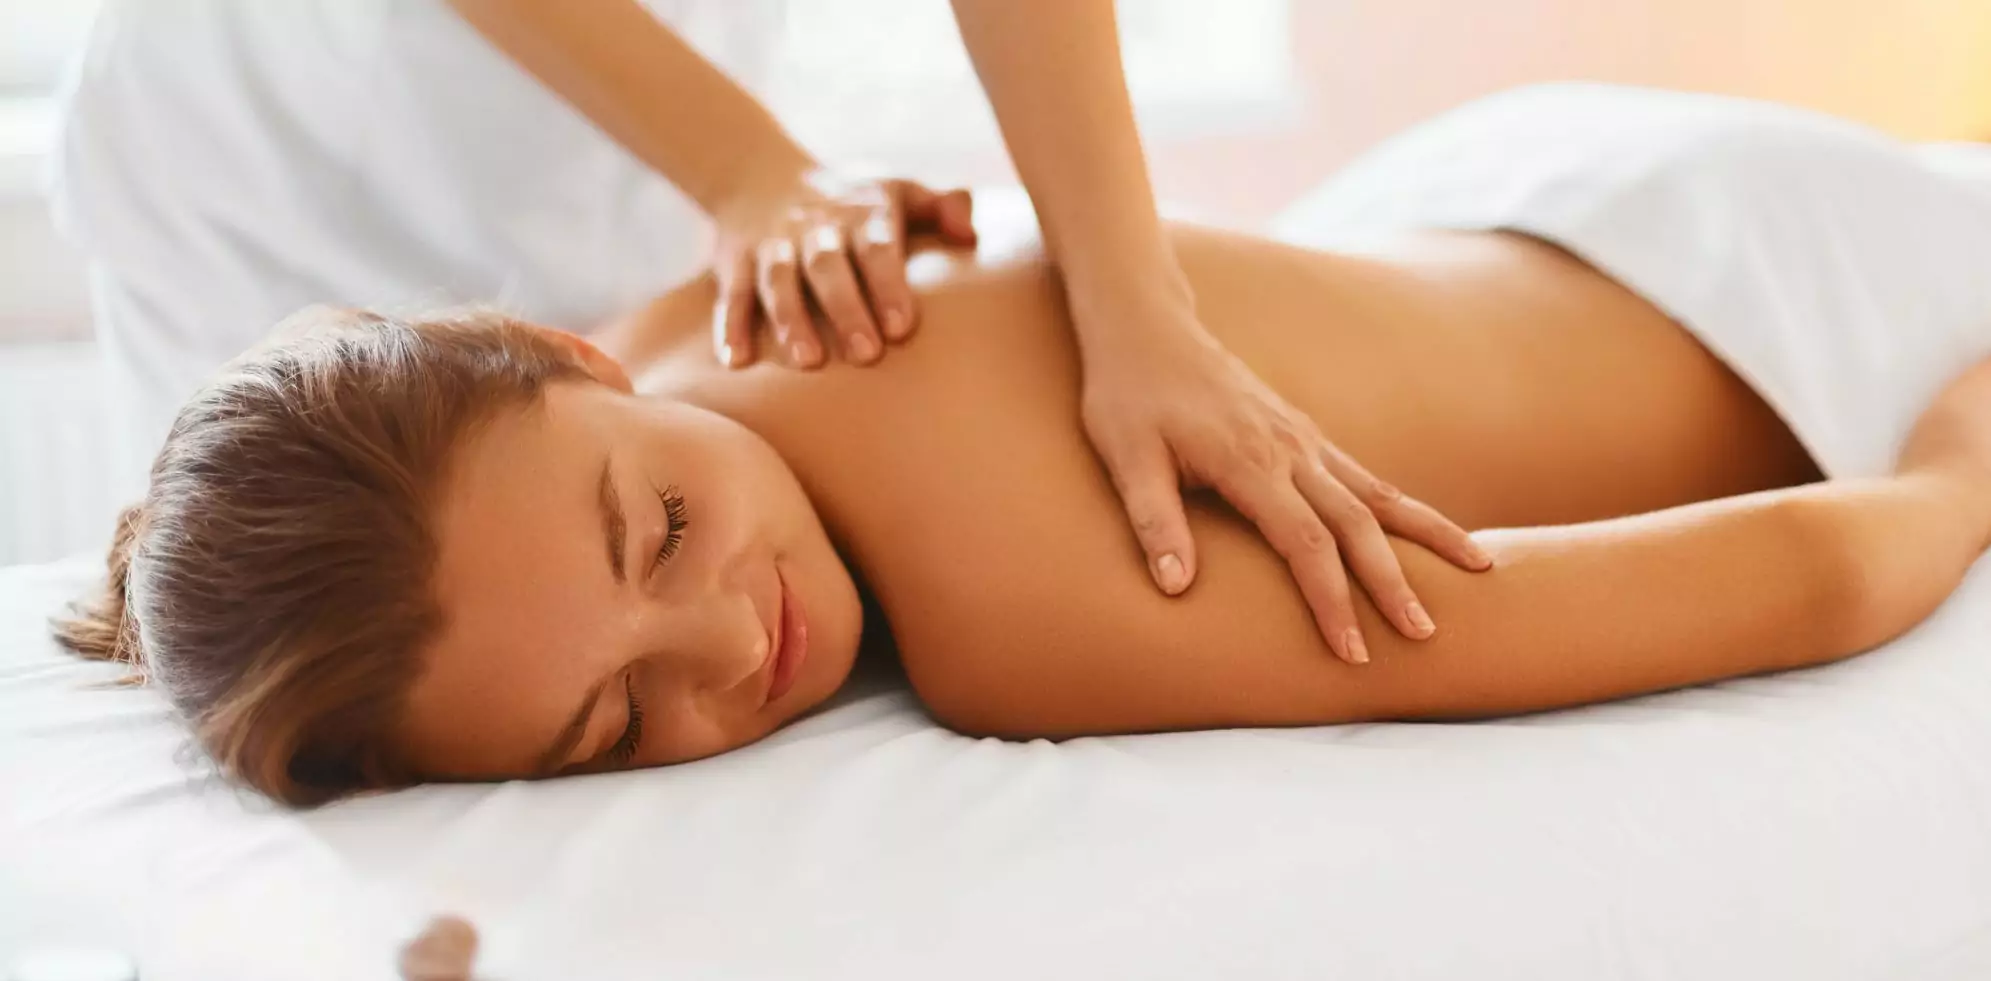 Medical Massage